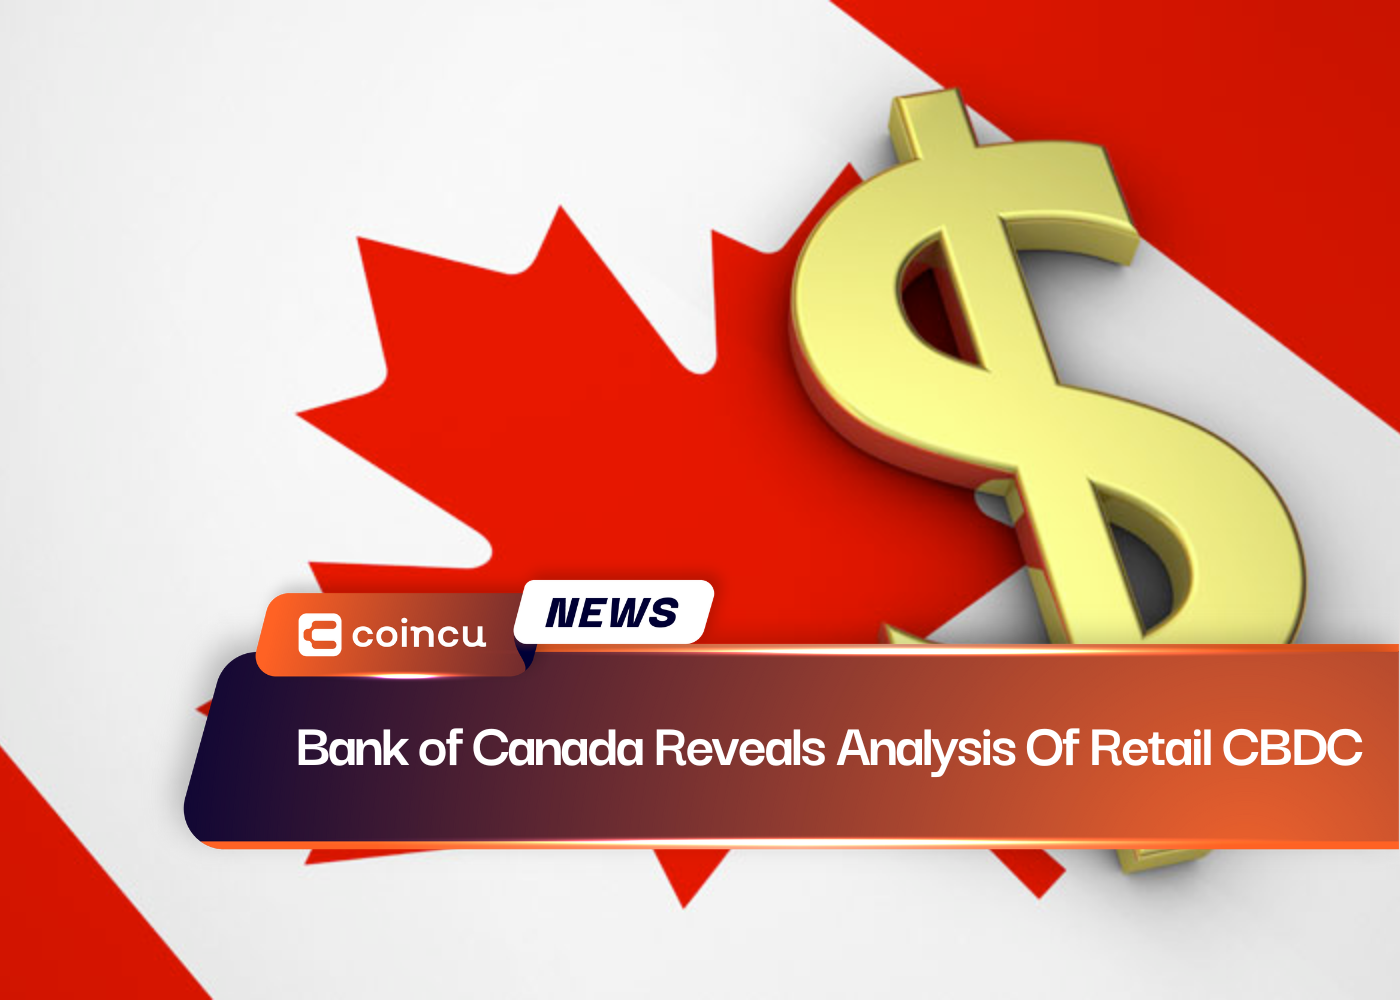 Ngân hàng Canada tiết lộ phân tích về CBDC bán lẻ